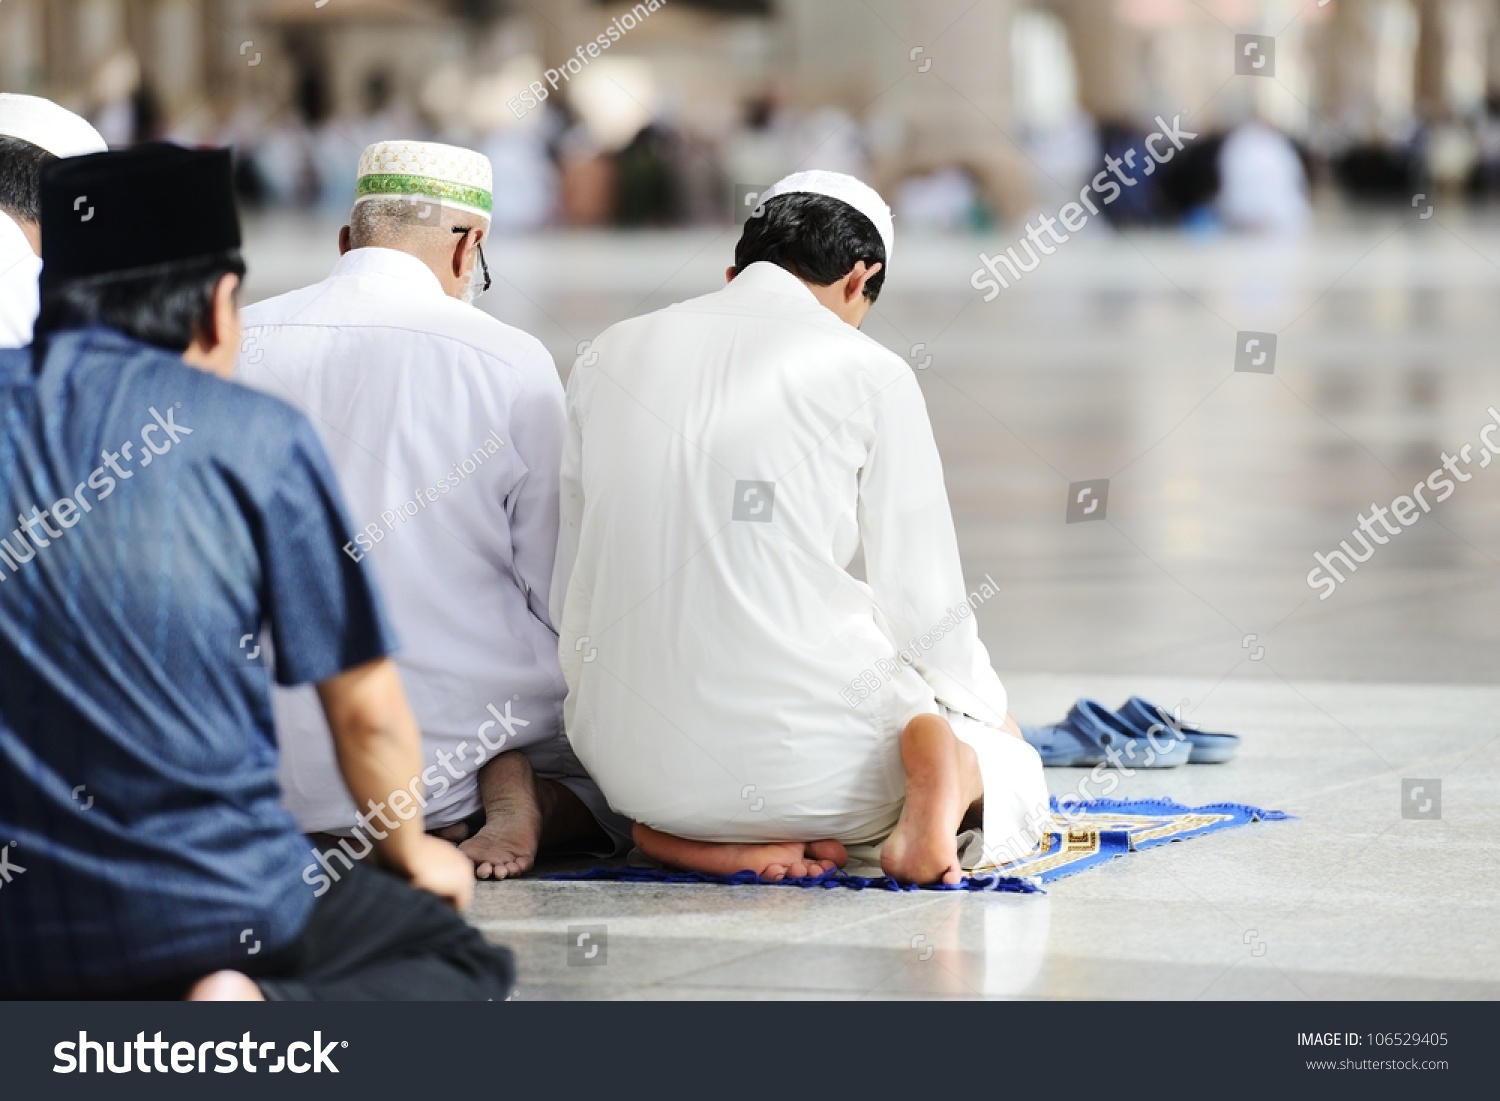 Islamic Prayer Stock Photo 106529405 - Shutterstock